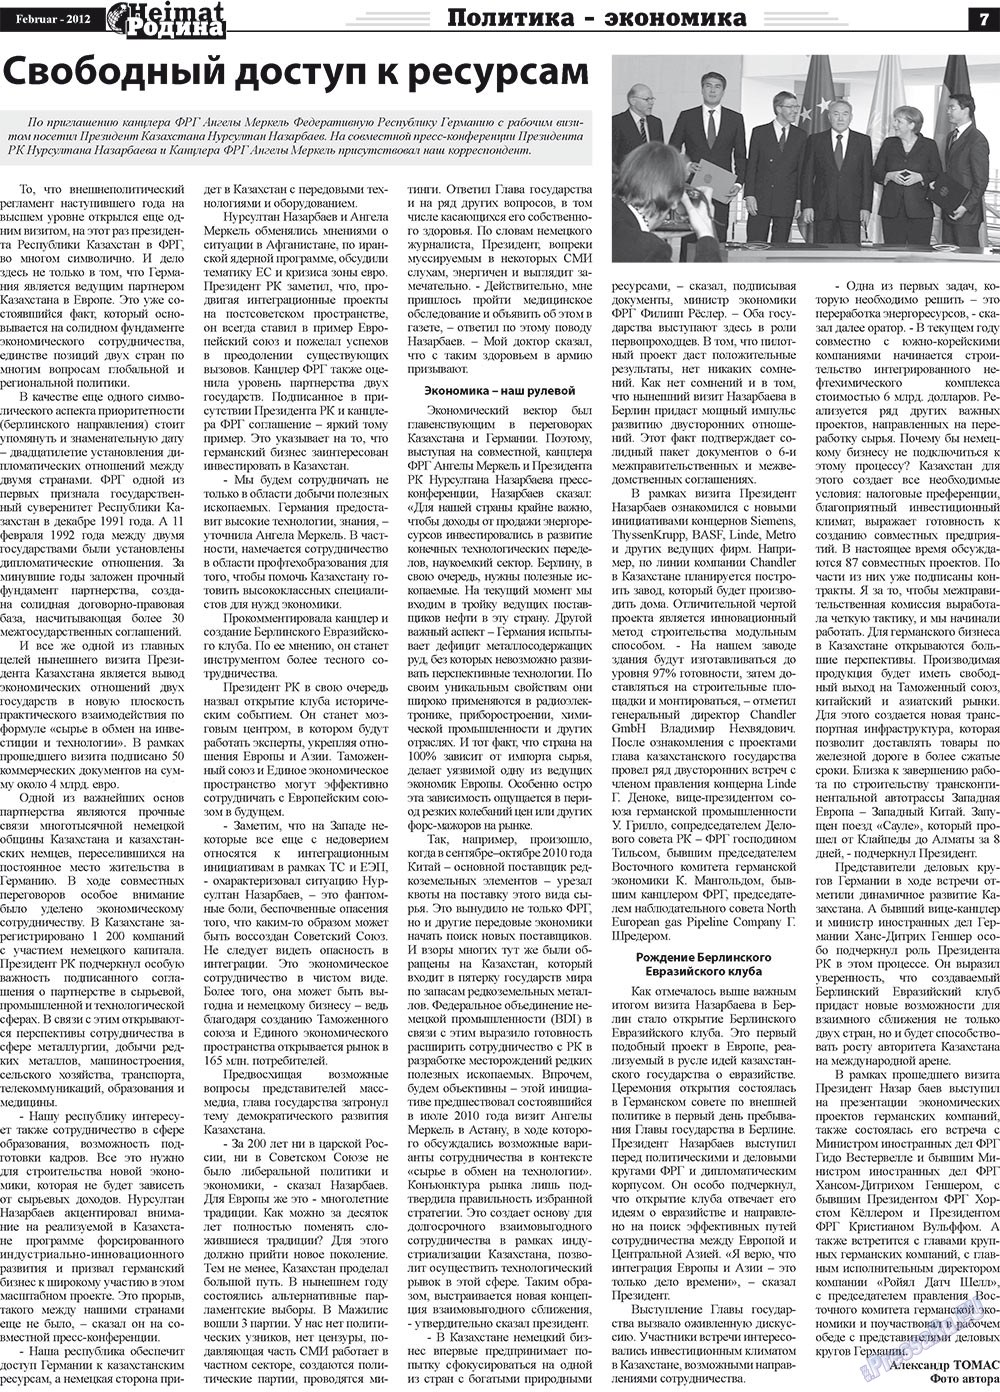 Heimat-Родина (газета). 2012 год, номер 2, стр. 7